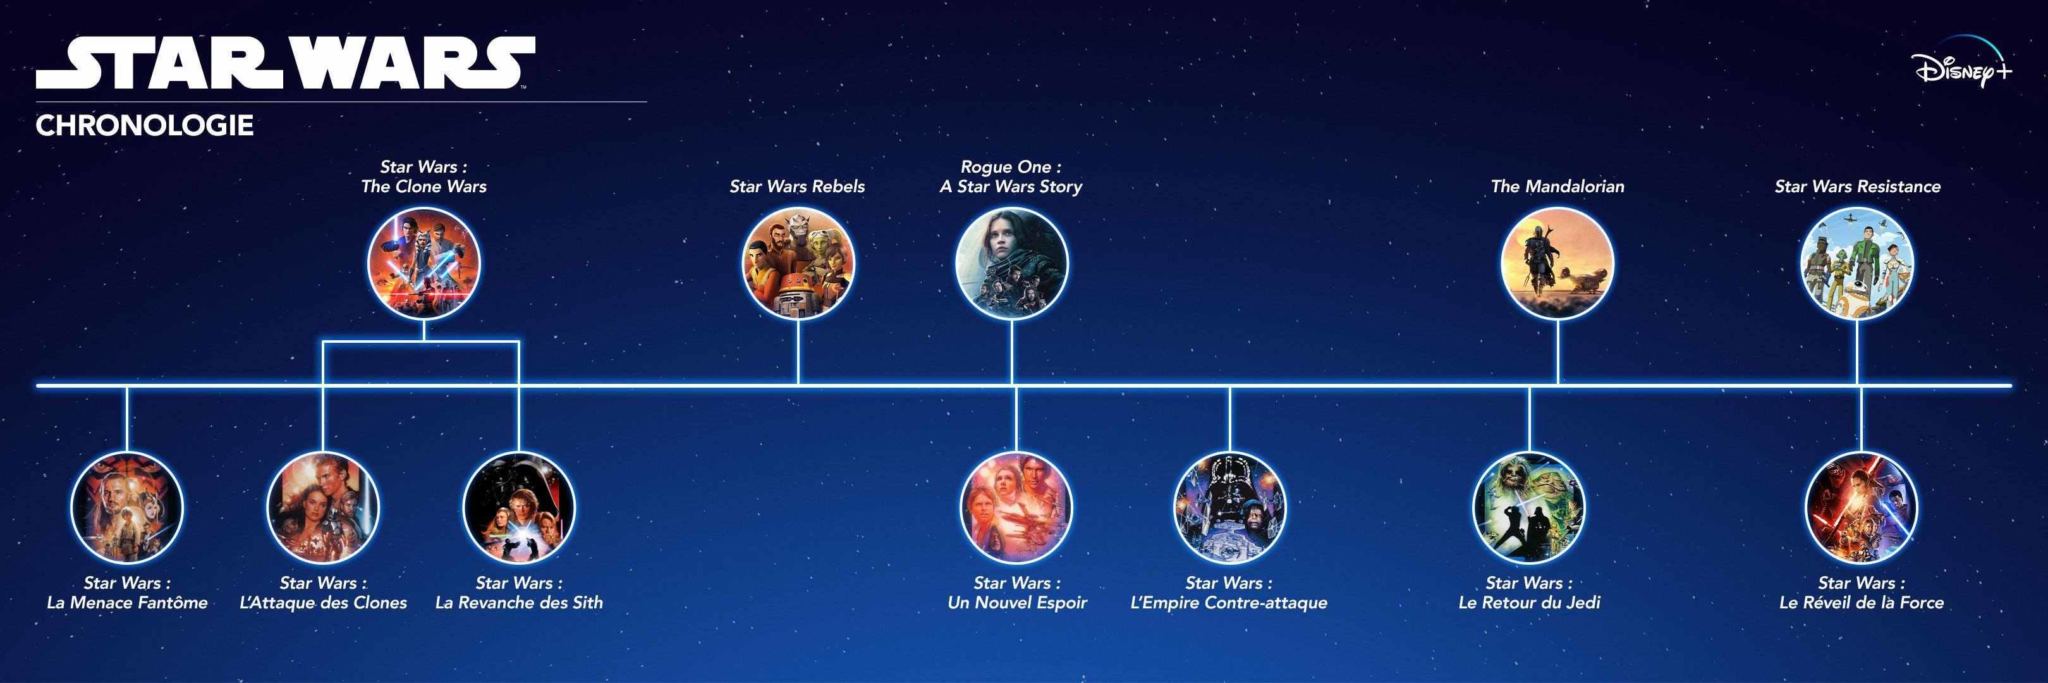 La chronologie de l'univers Star Wars sur Disney +